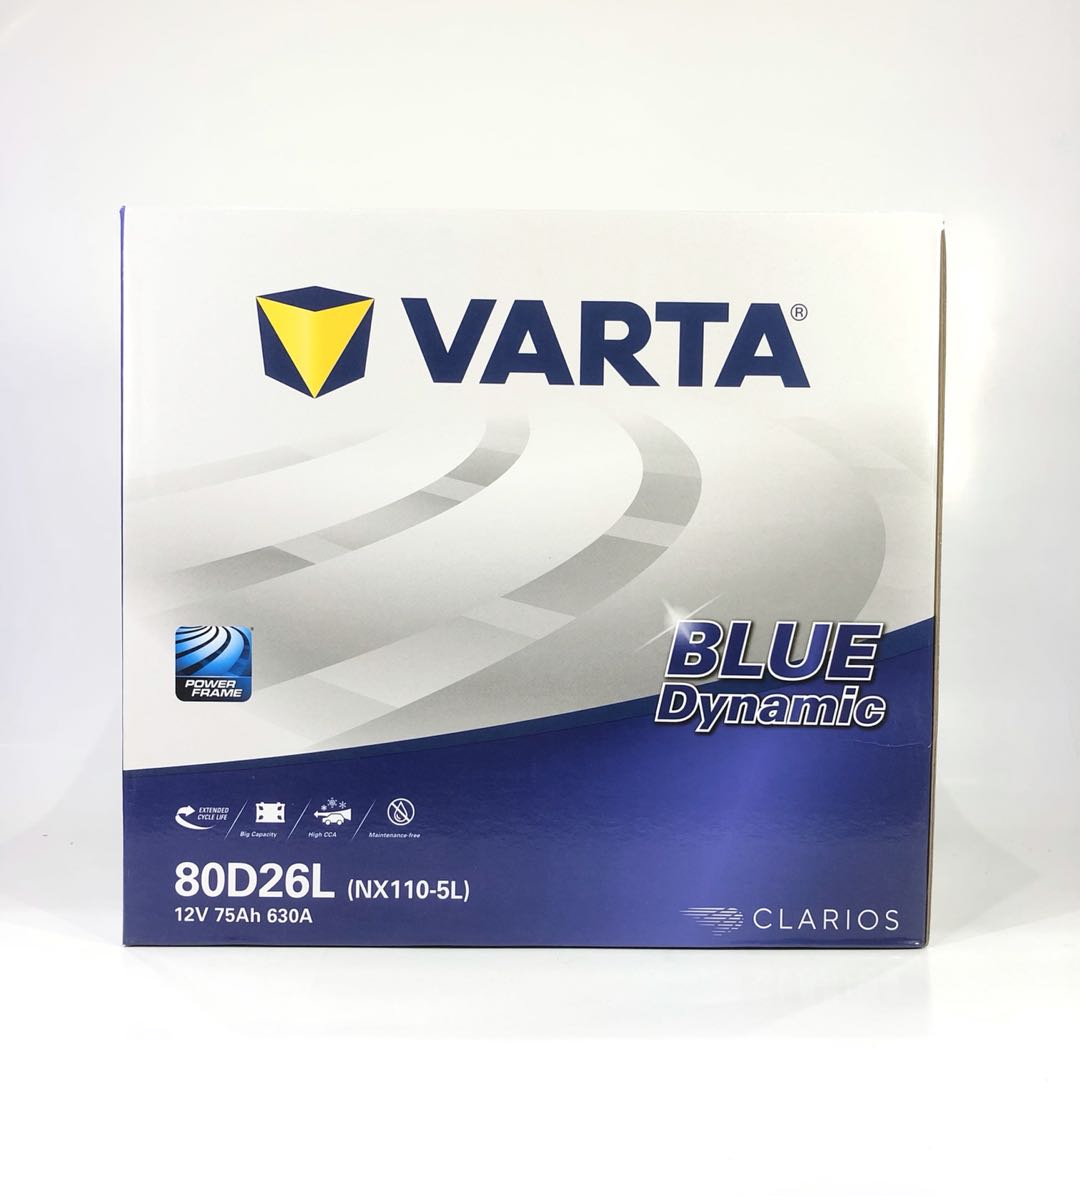 VARTA 80D 26L/R BLUE DYNAMIC